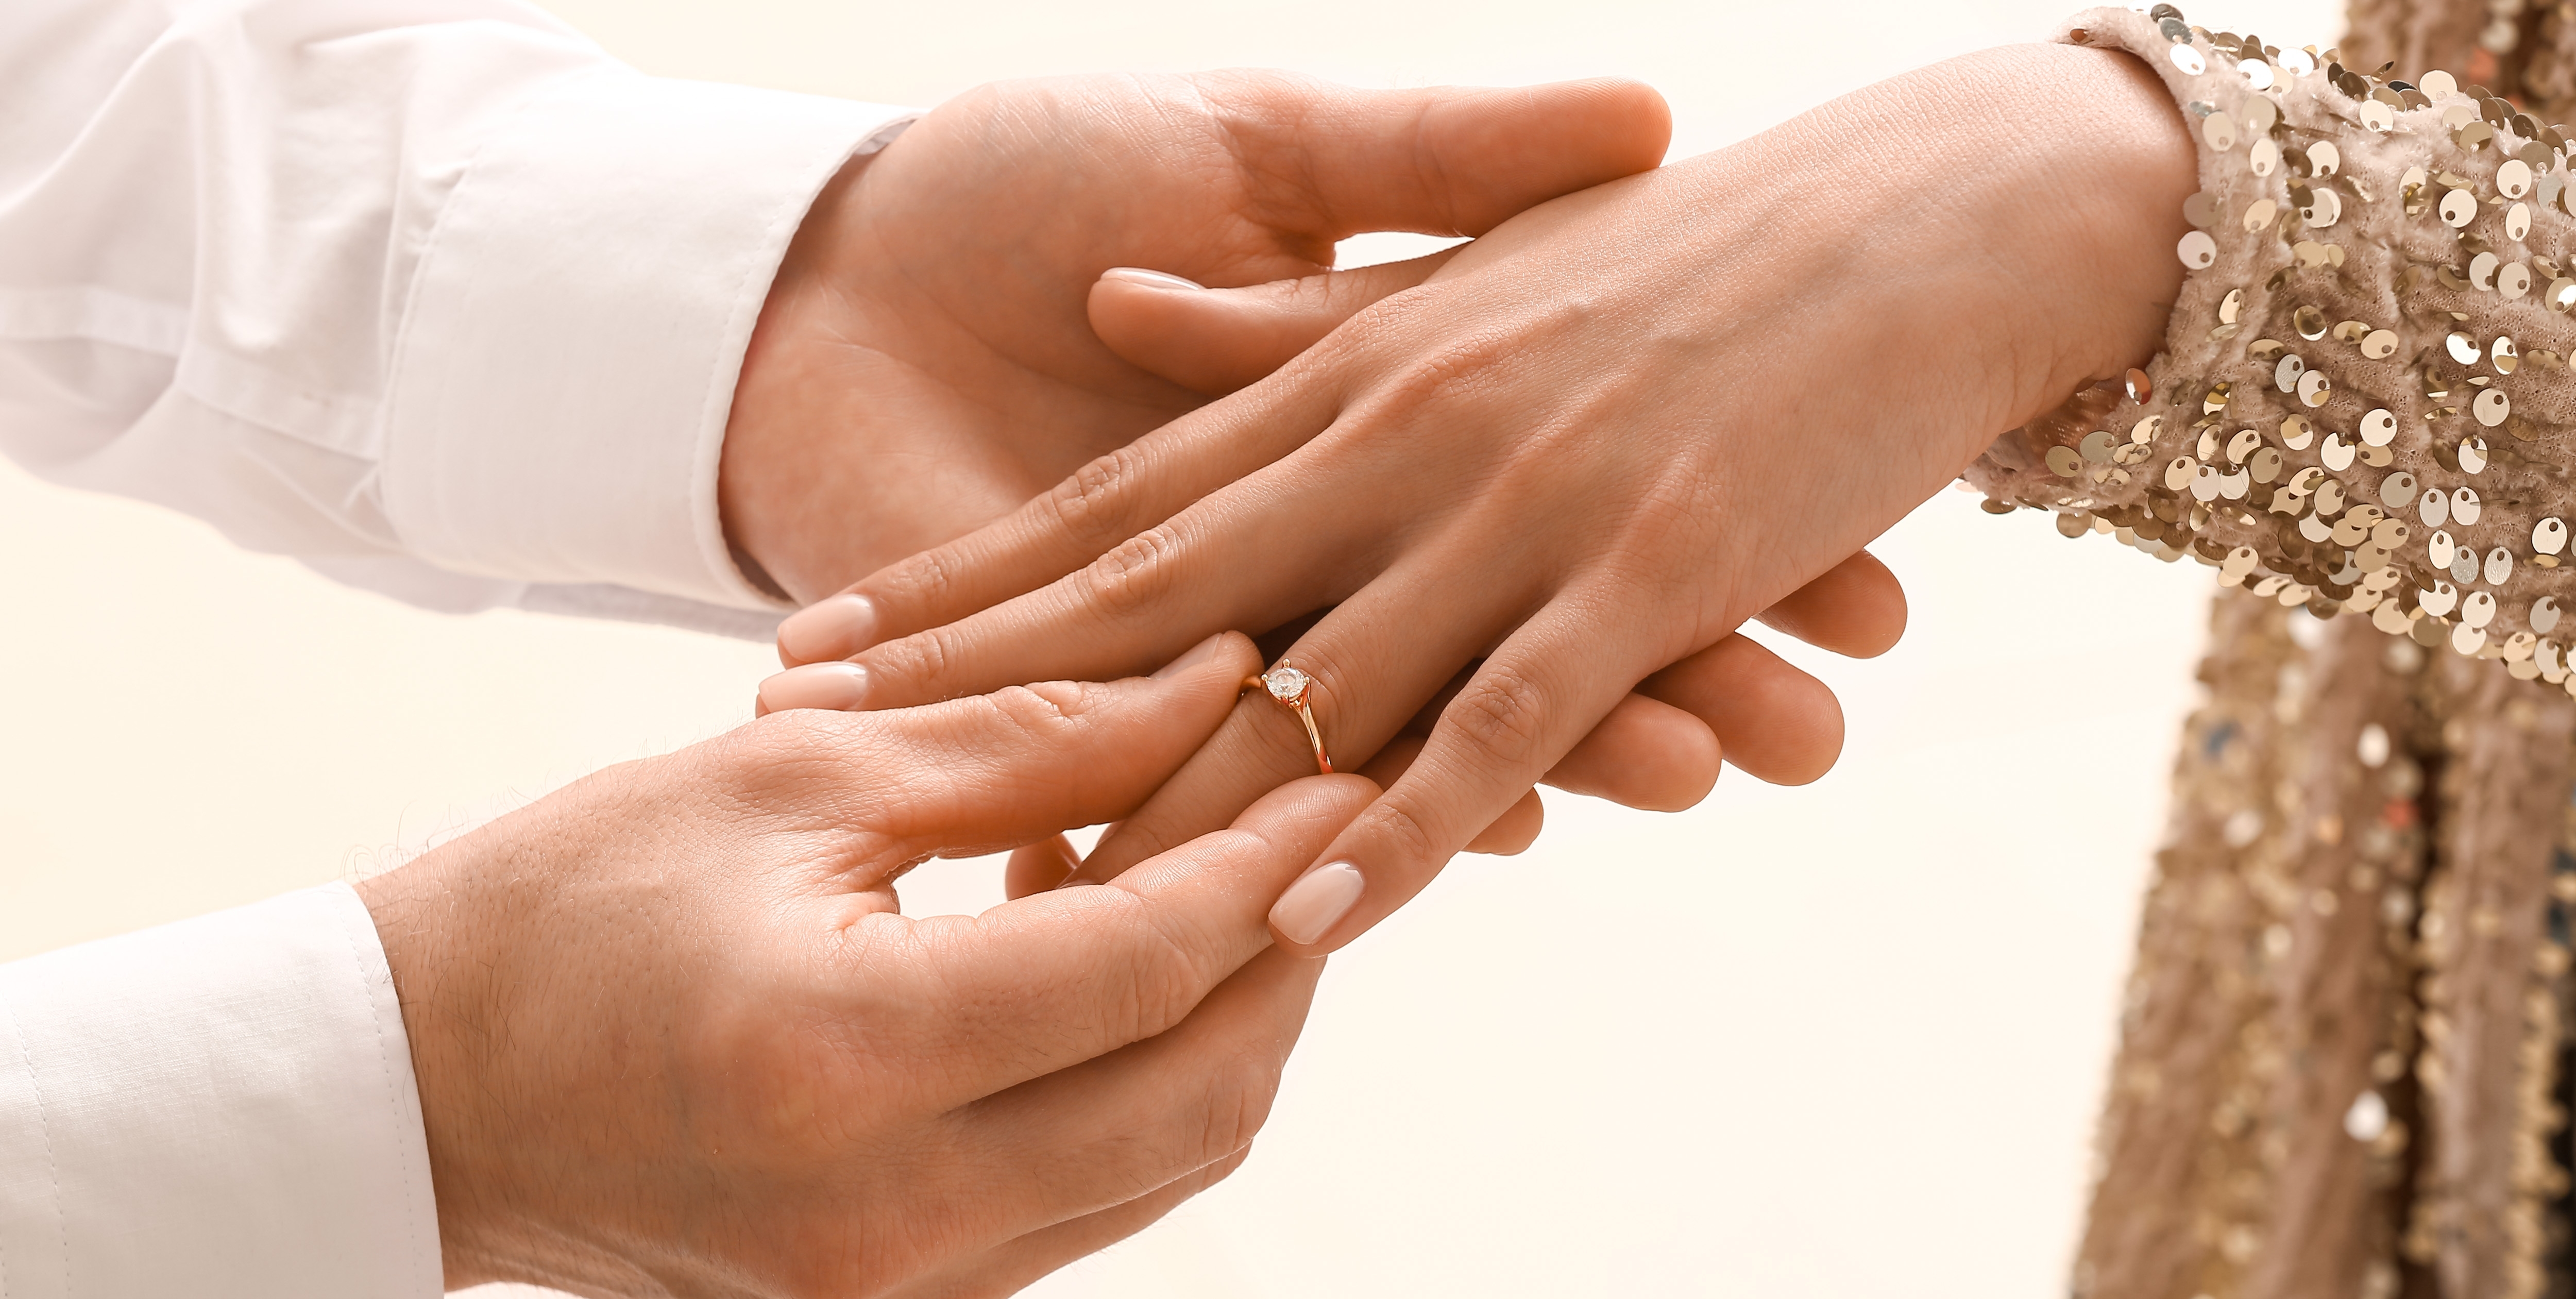 Un homme plaçant une bague de fiançailles sur la main d'une femme | Source : Shutterstock